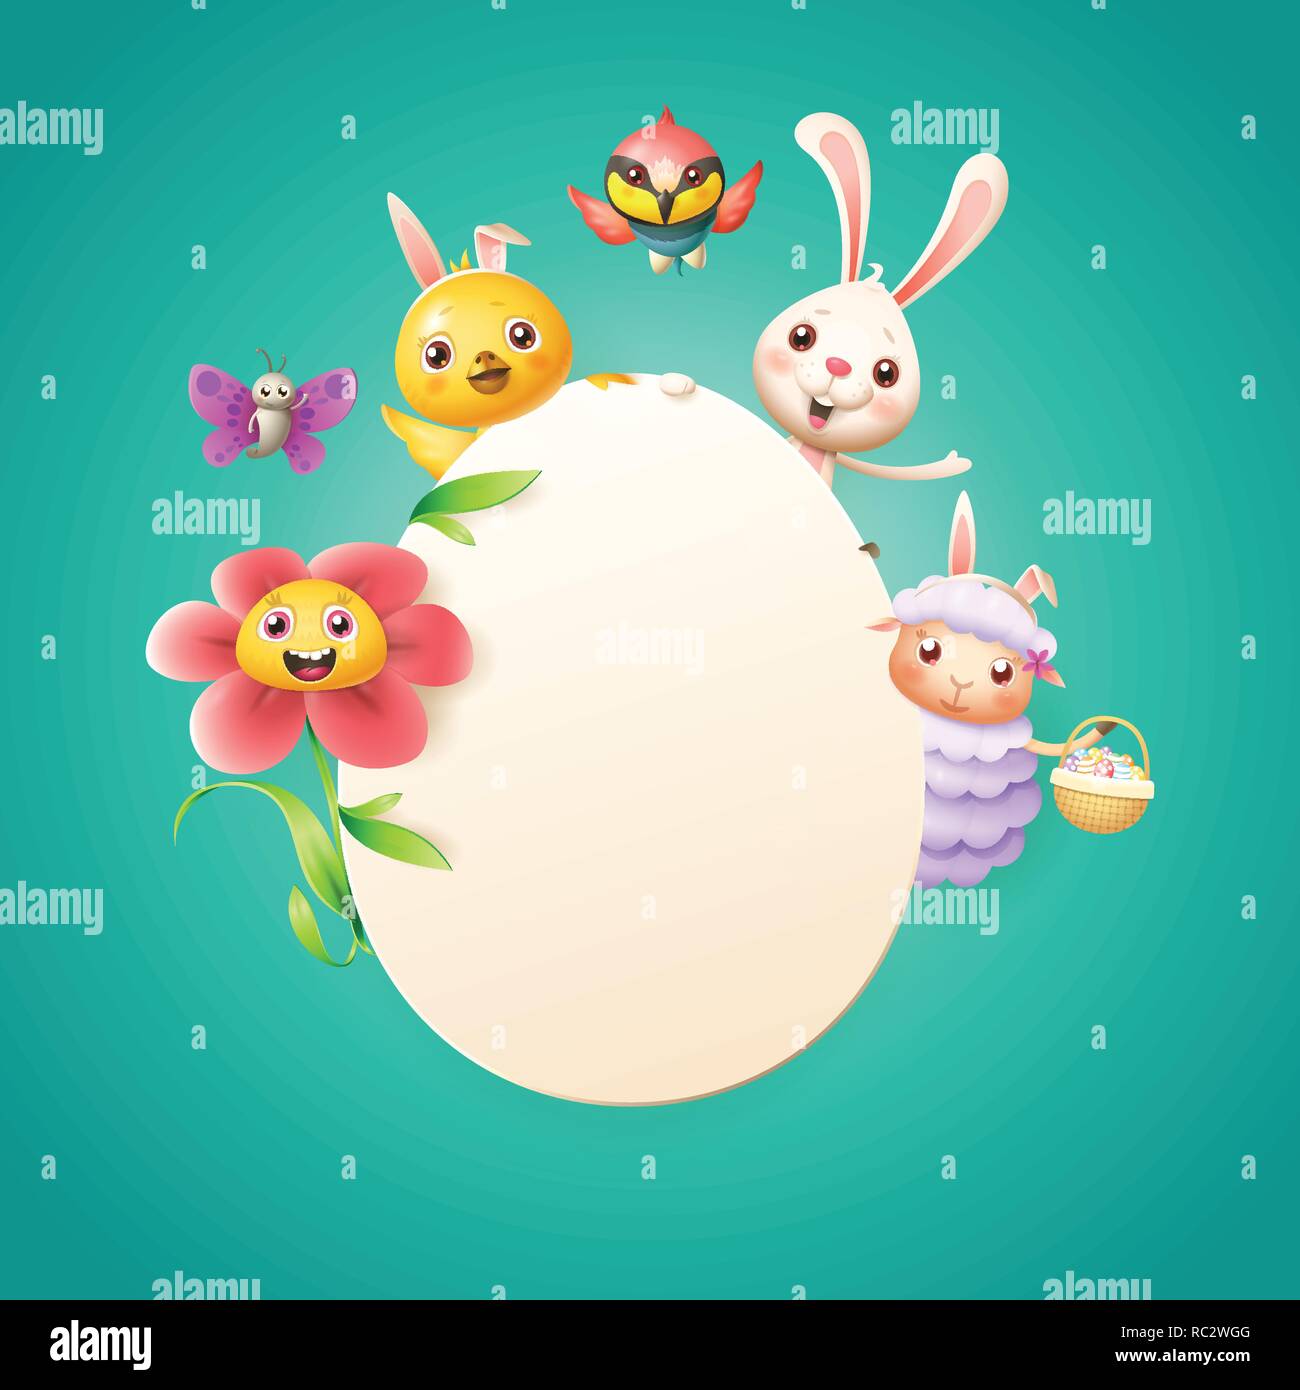 Modèle de carte de Pâques - Lapin de Pâques, poulet, mouton, fleurs oiseaux guêpier et papillon fêter Pâques autour de oeuf - fond turqouise Illustration de Vecteur